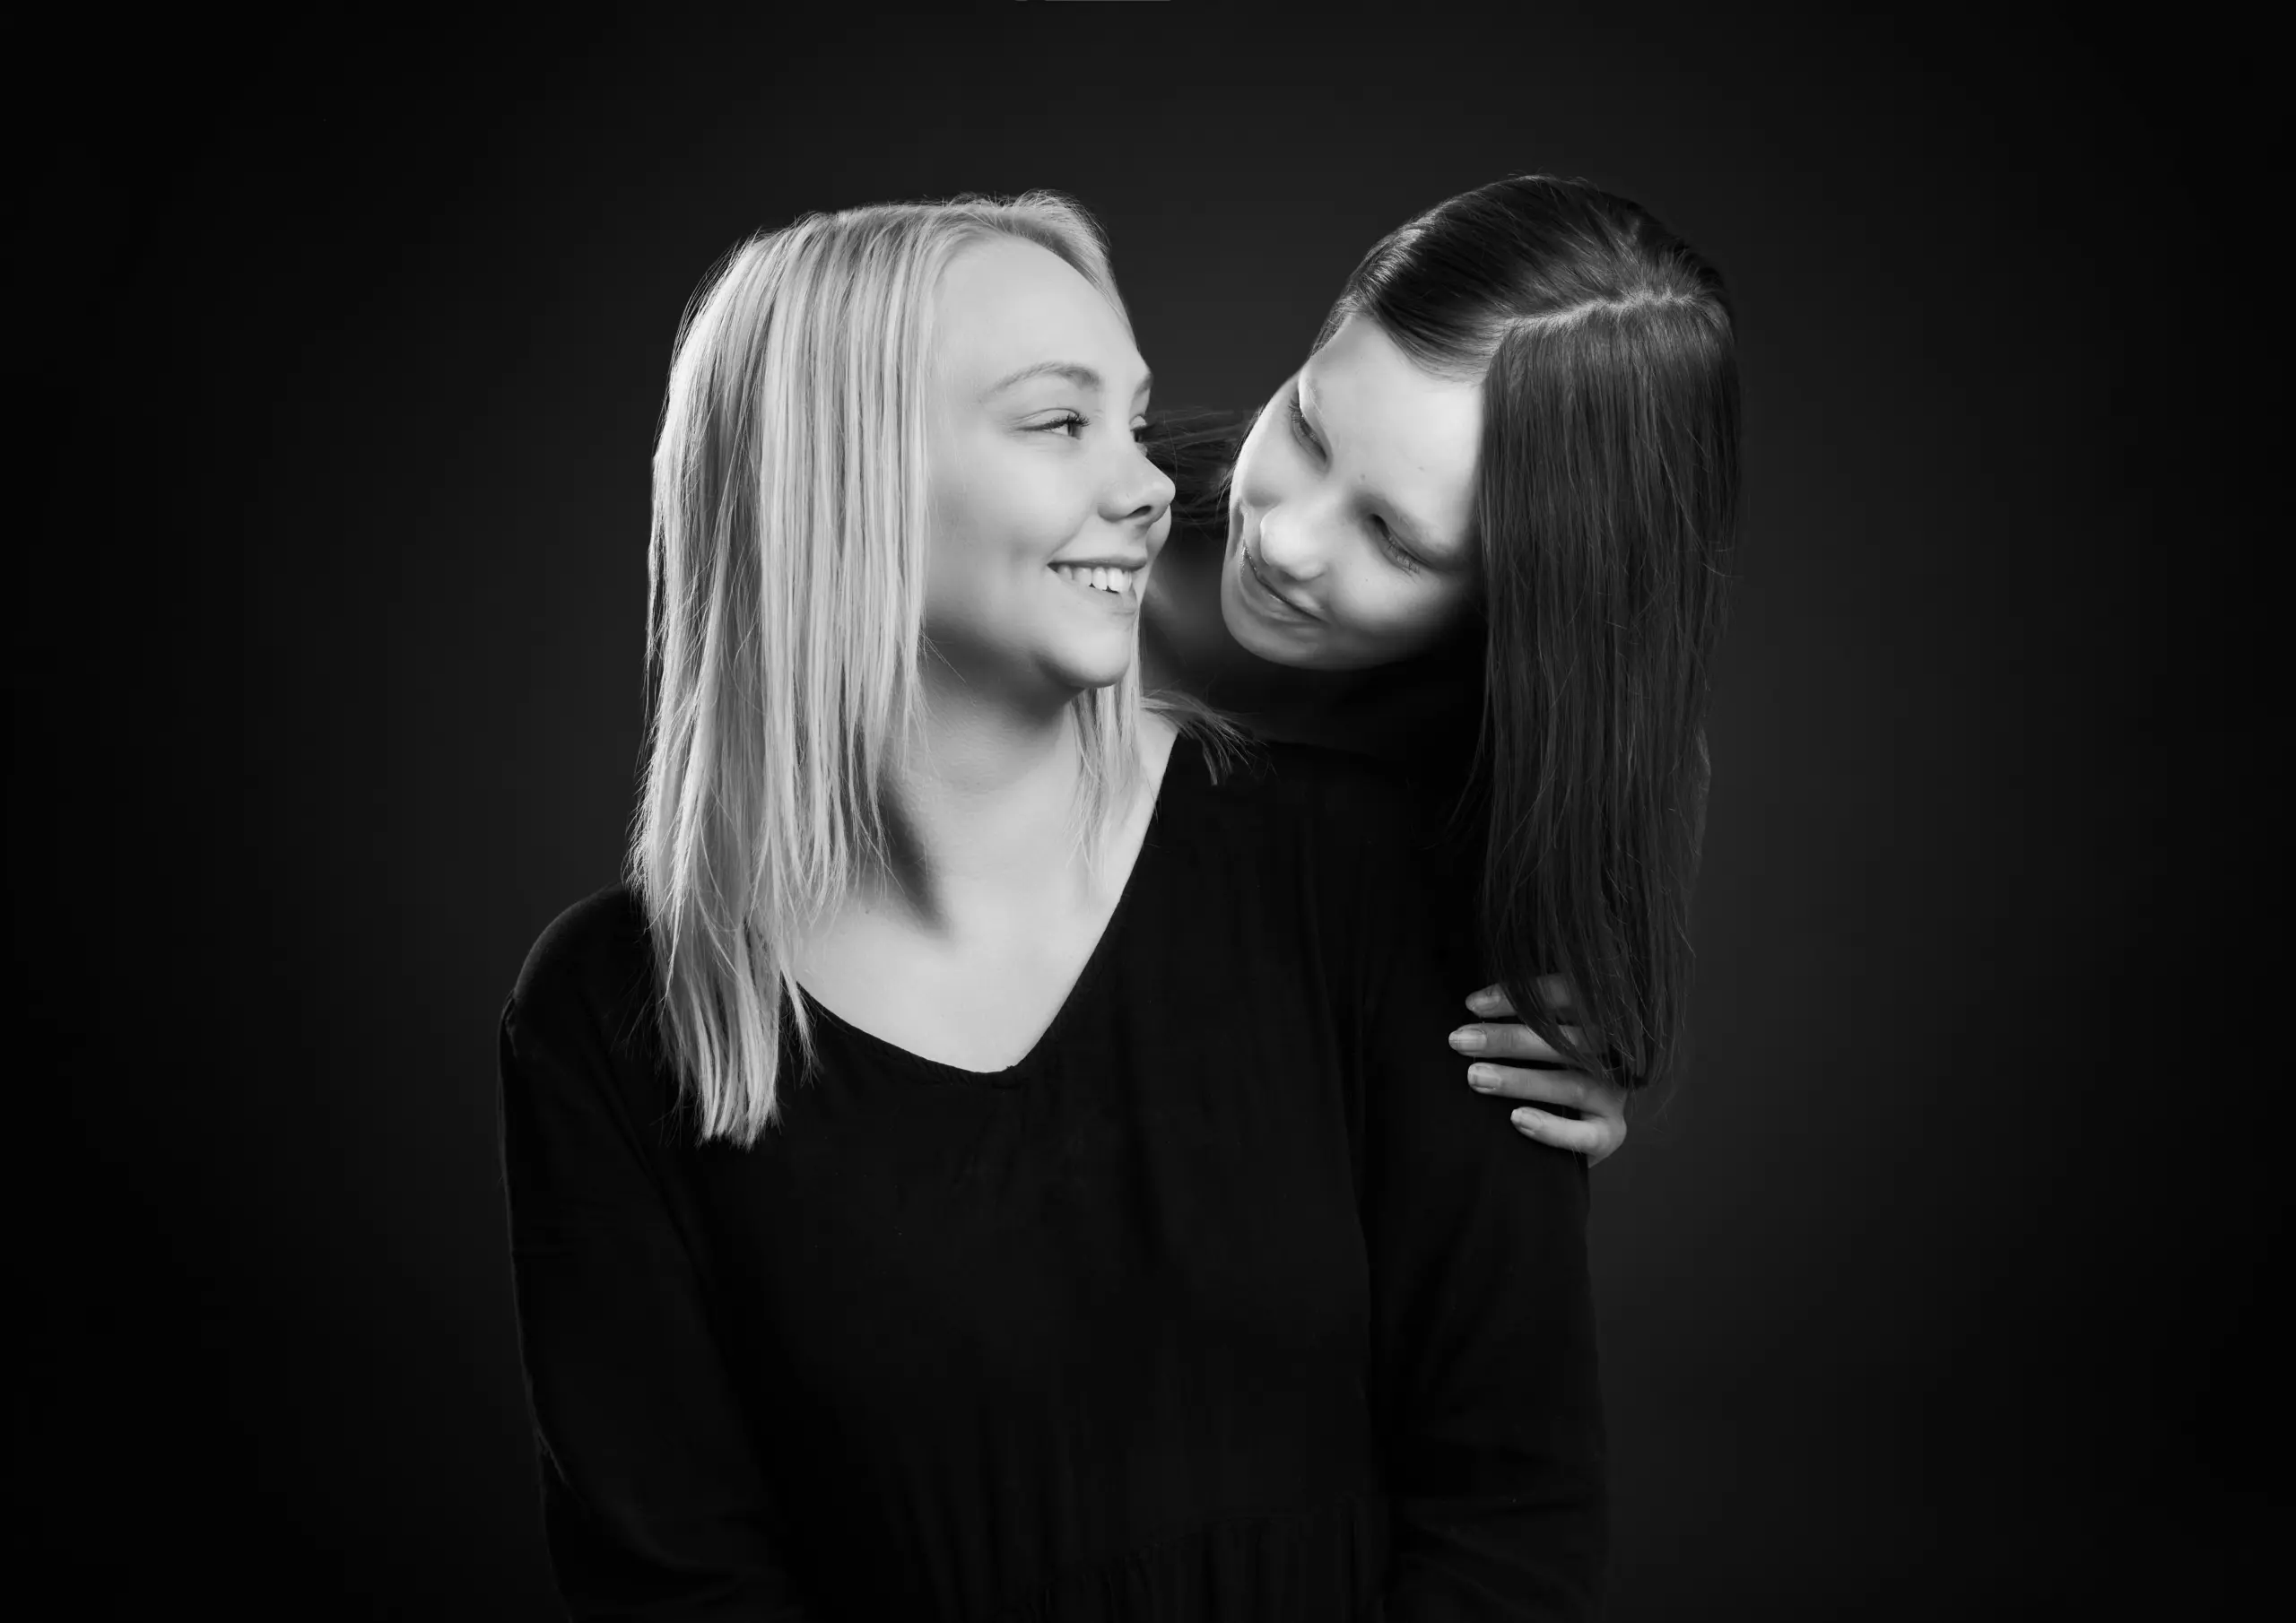 Søskendebillede i sort hvid af en blond og en brunhåret pige